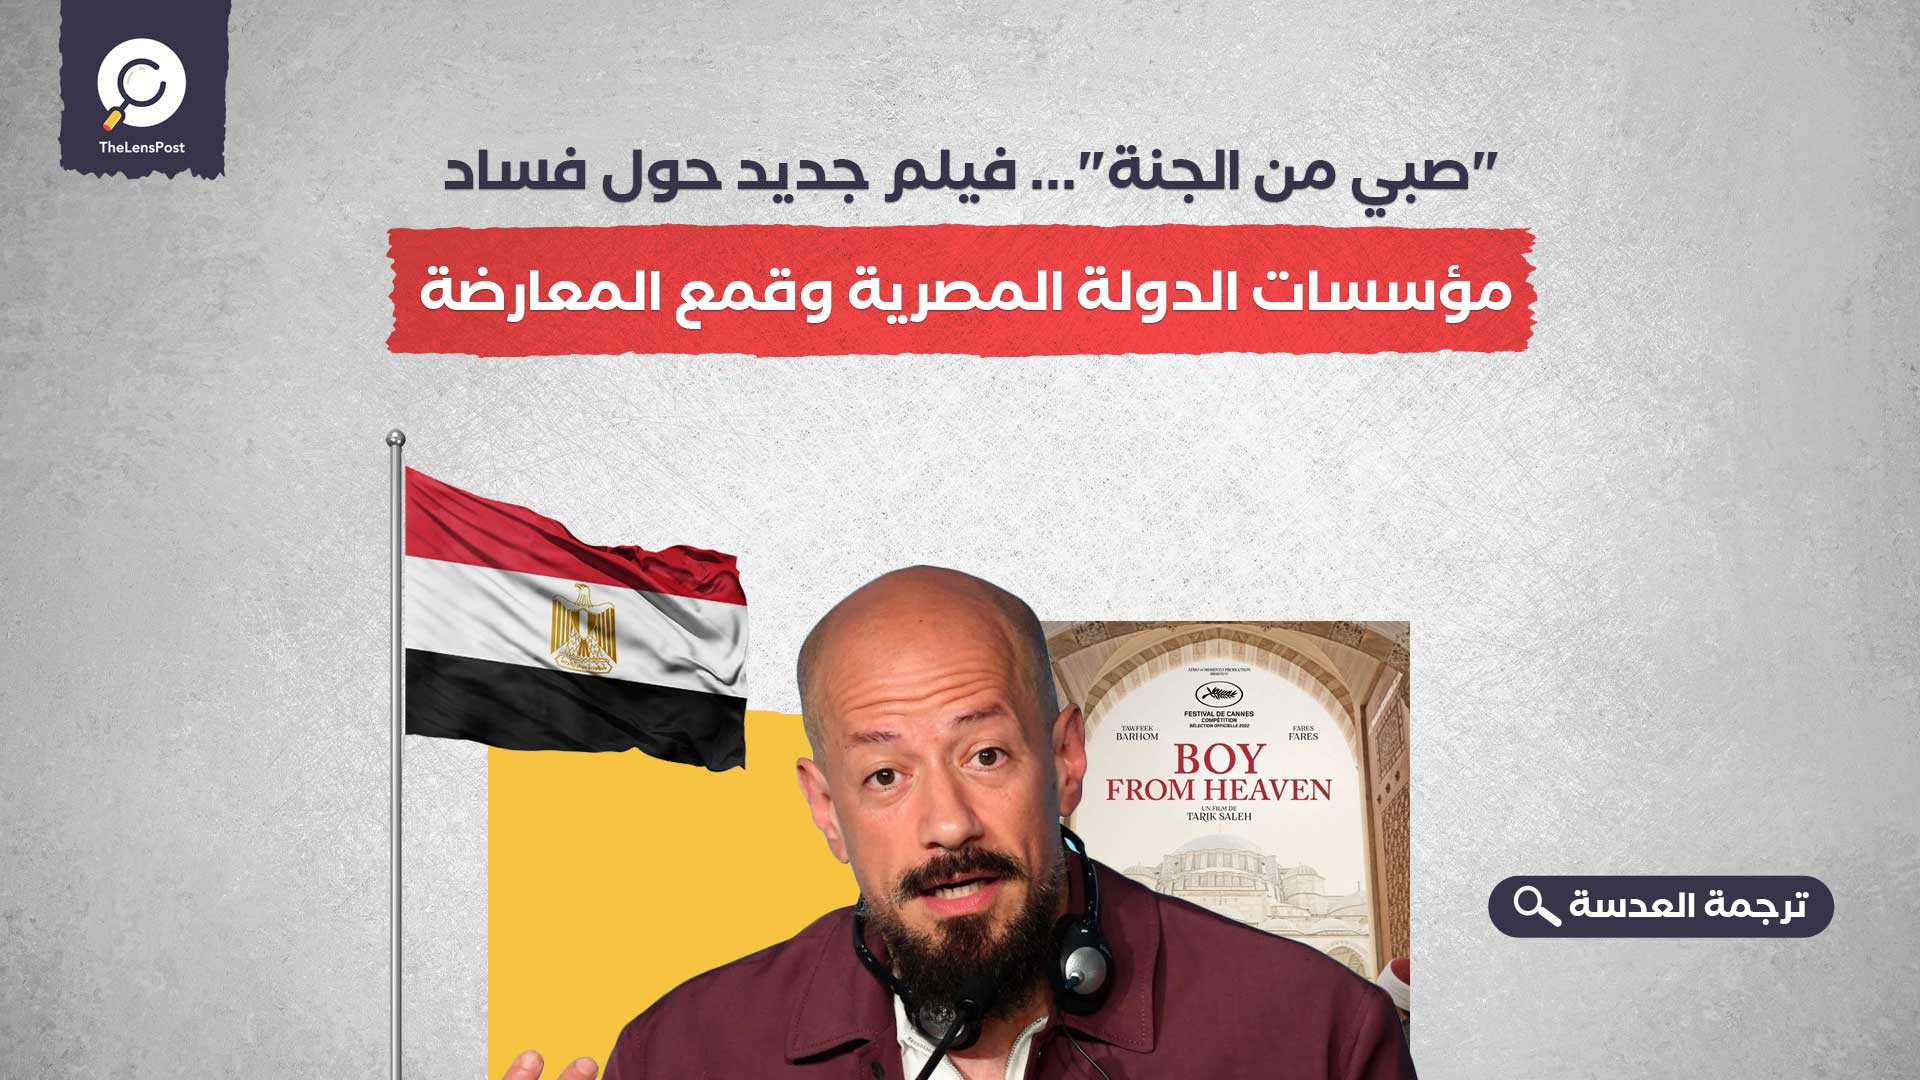 "صبي من الجنة"... فيلم جديد حول فساد مؤسسات الدولة المصرية وقمع المعارضة